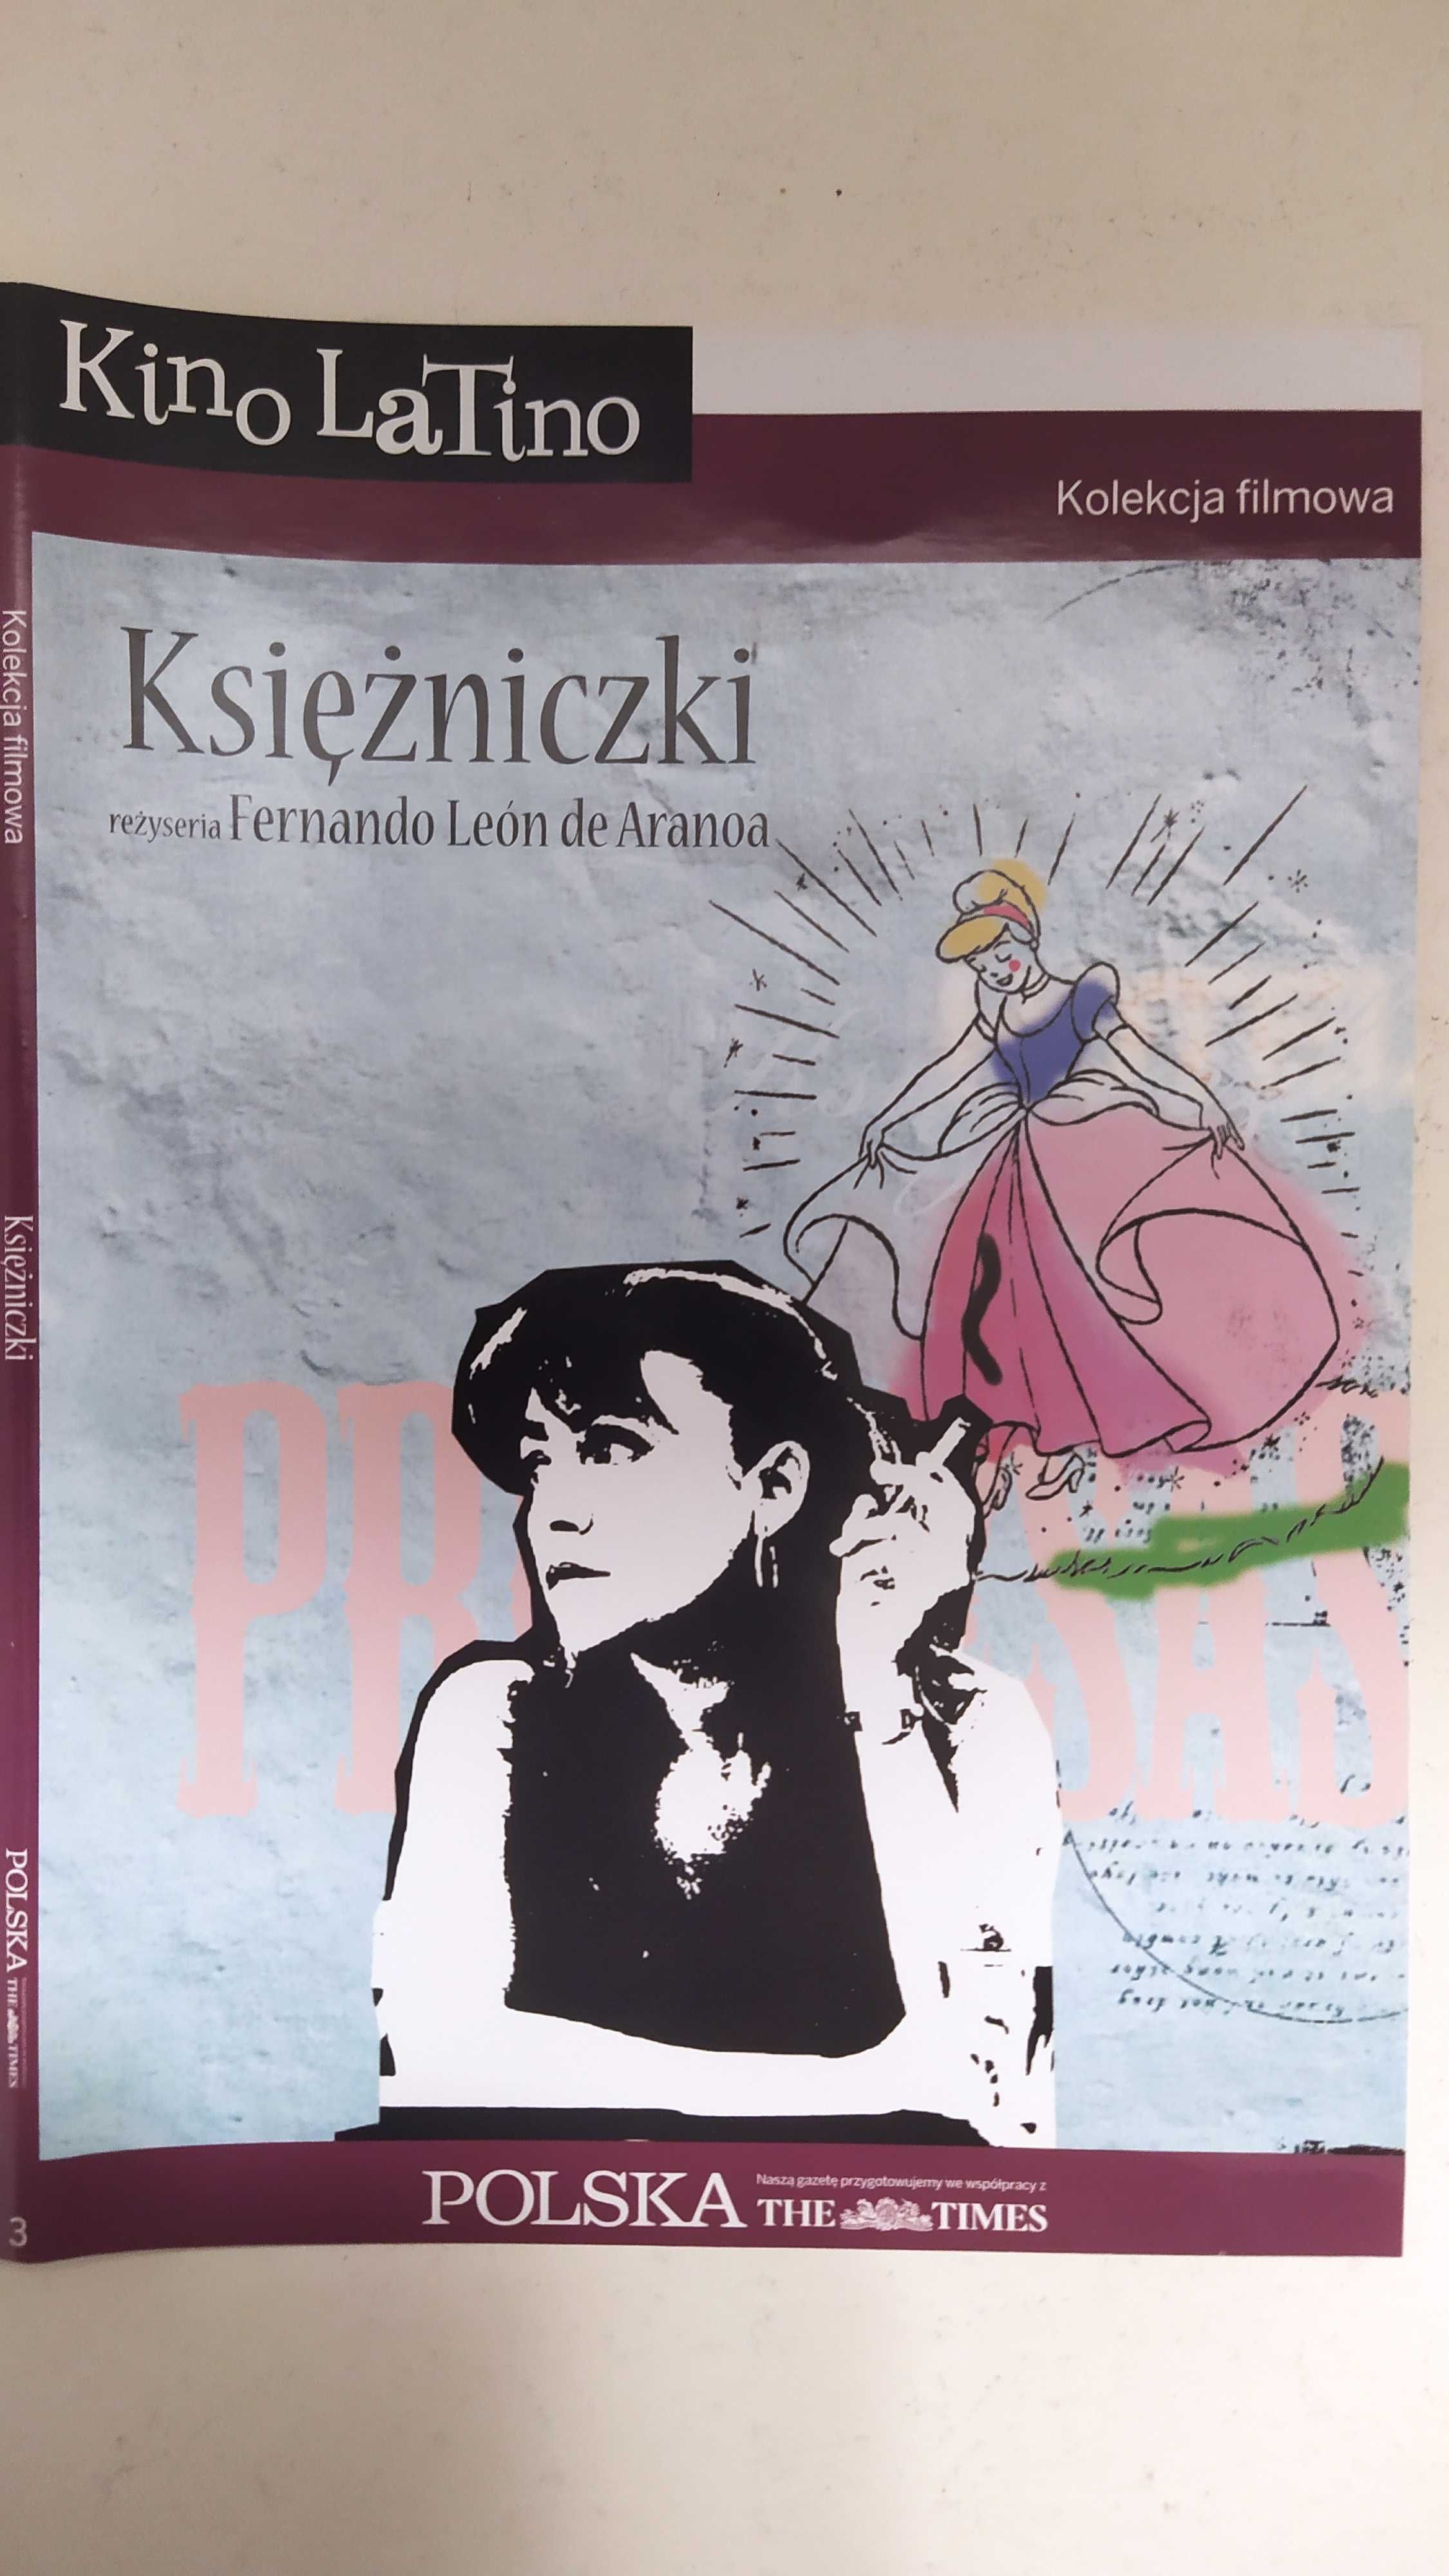 Kino Latino 3  Księżniczki  Kolekcja filmowa Polska Times DVD slim